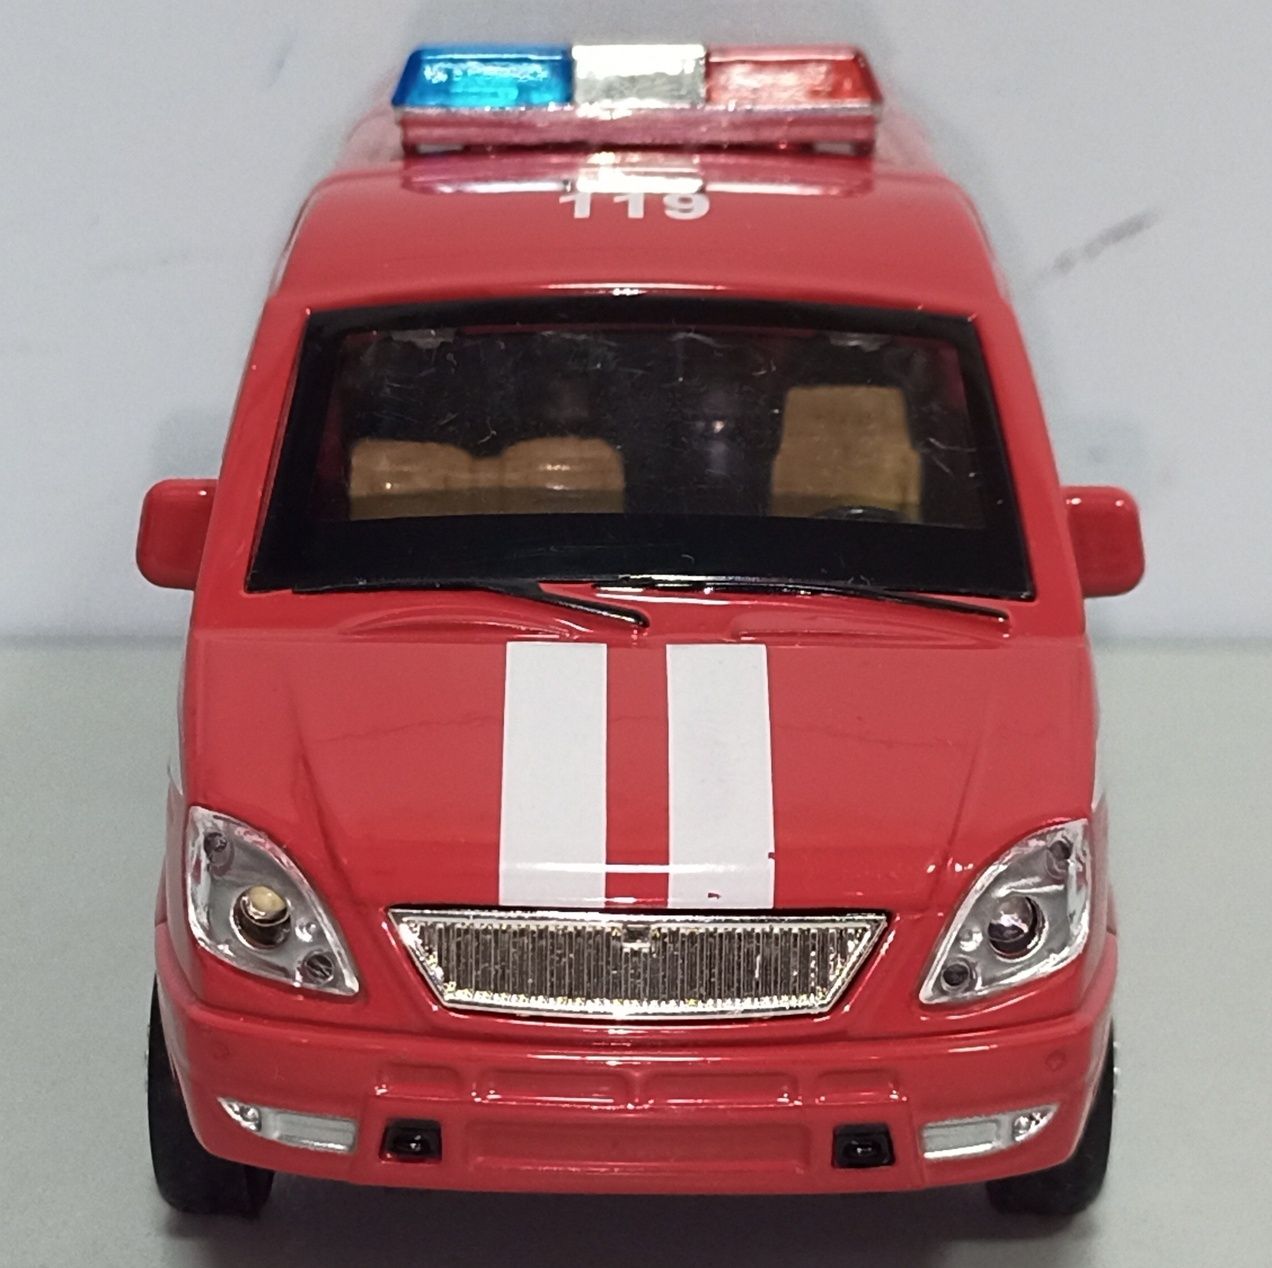 Машинка ГАЗель "Пожарная" модель 1:32 ТМ "АвтоПром" Металл, звук, свет